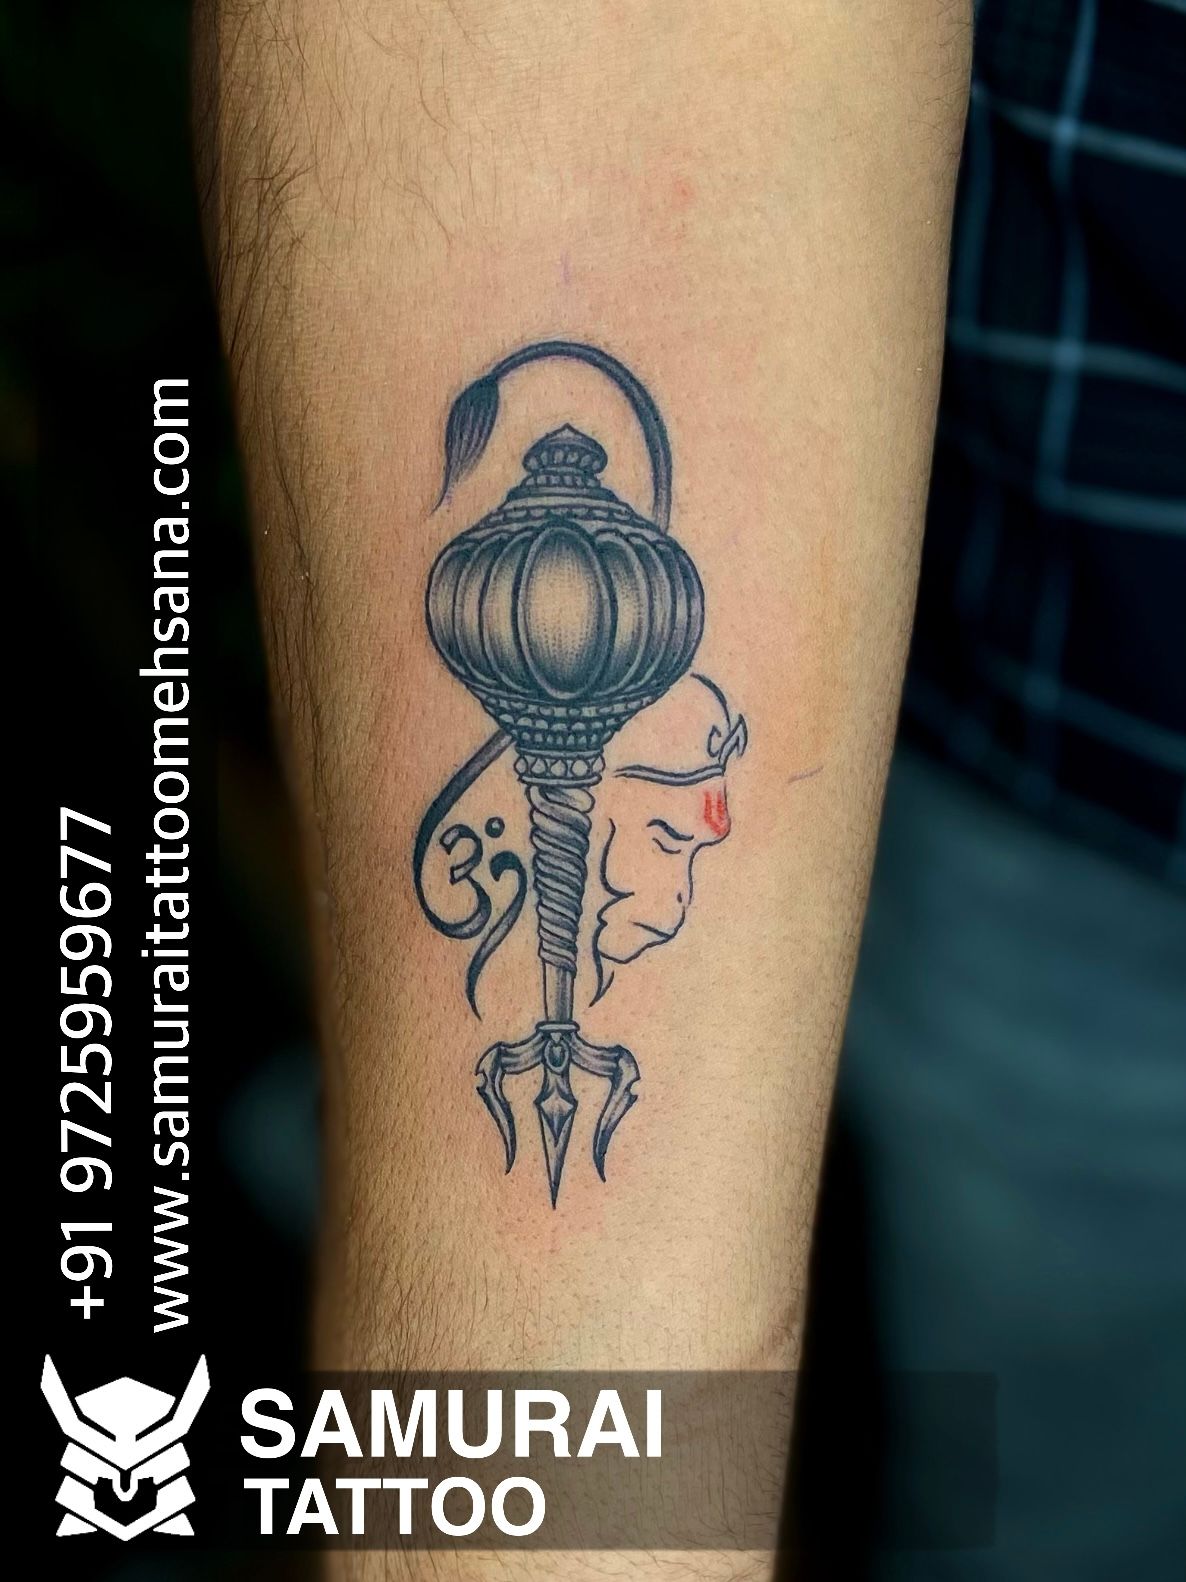 Hanuman Tattoo | Hanuman tattoo, Tattoo designs, Tattoos